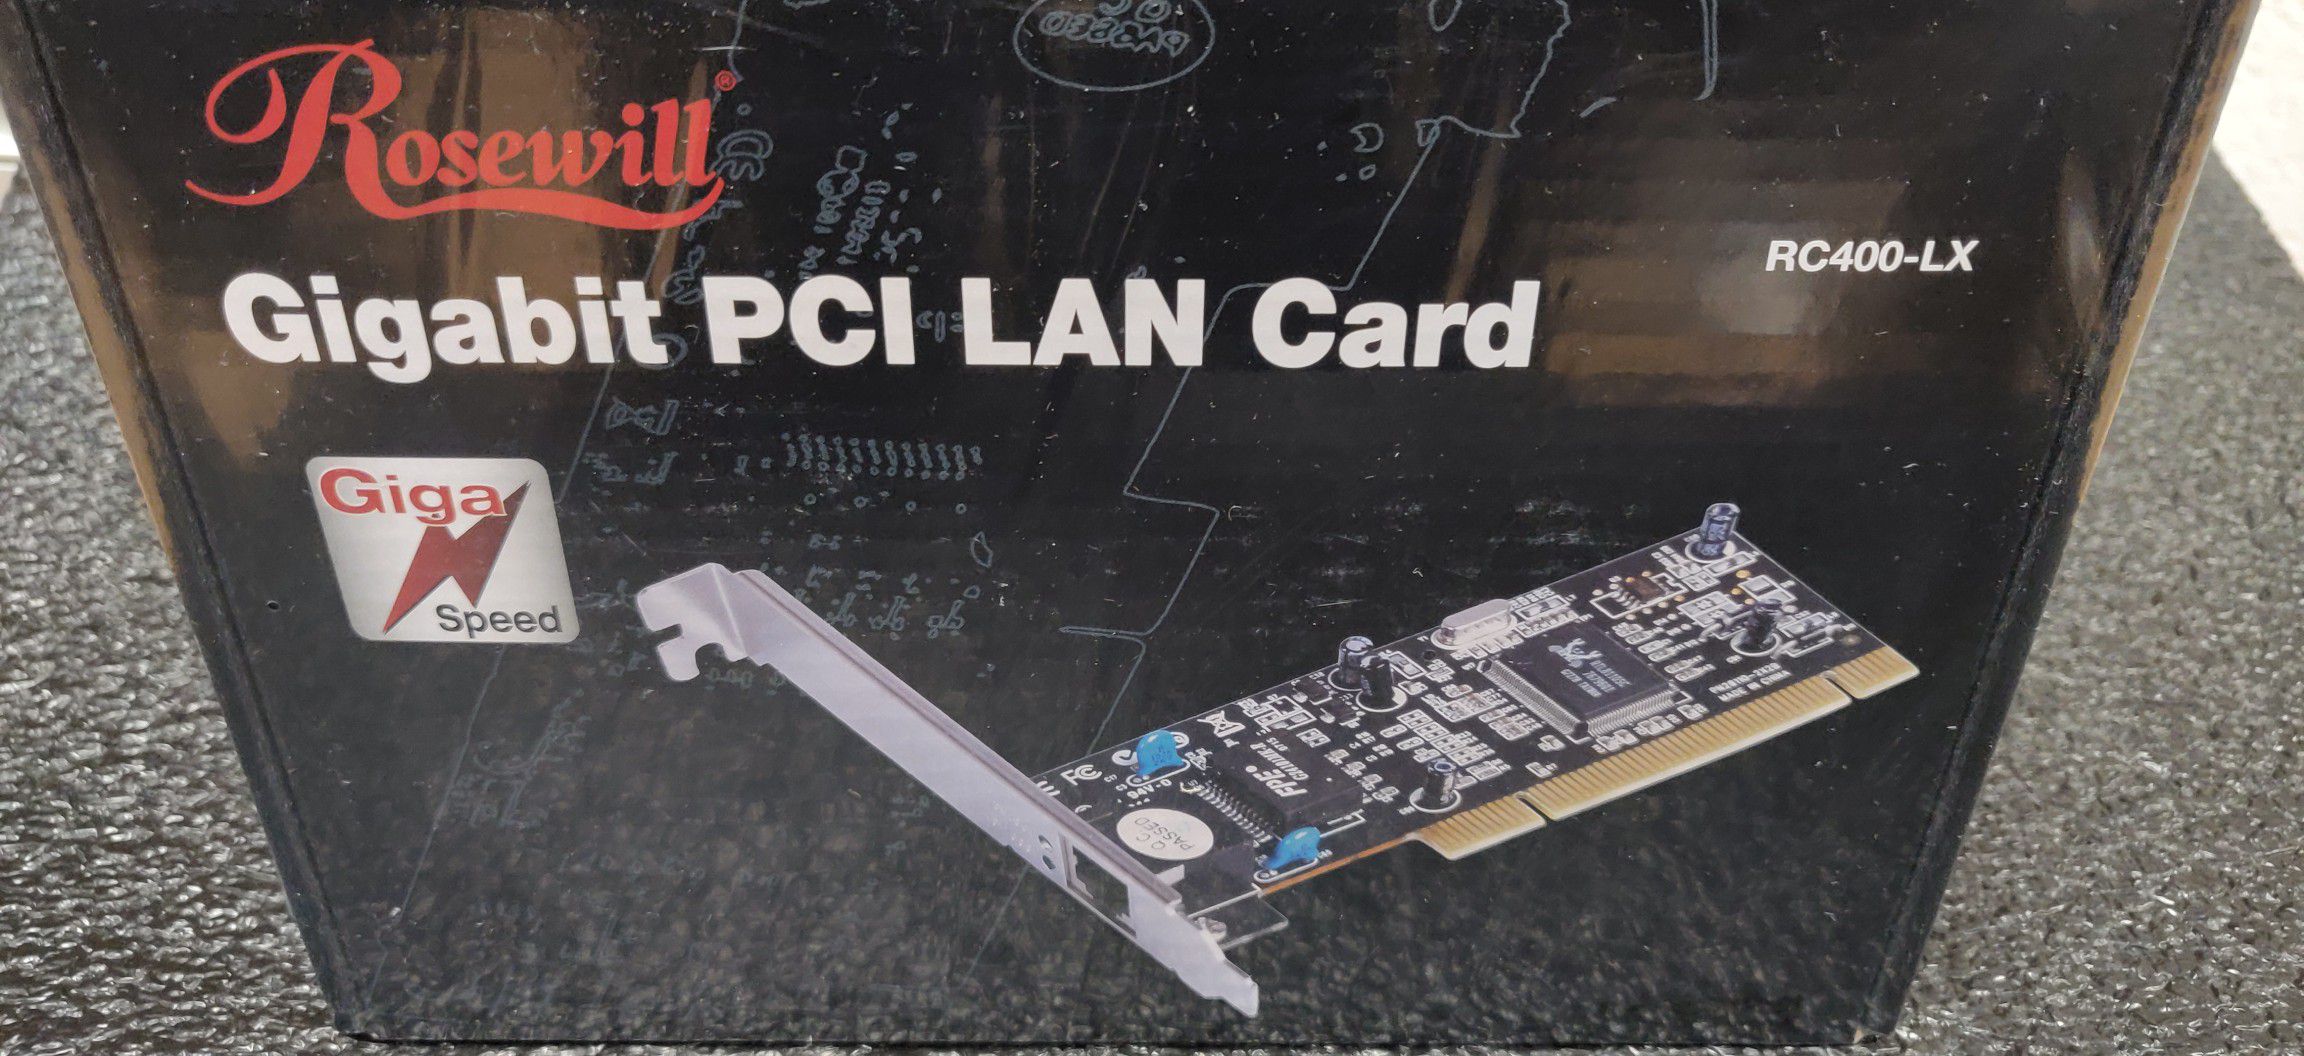 Gigabit PCI LAN Card